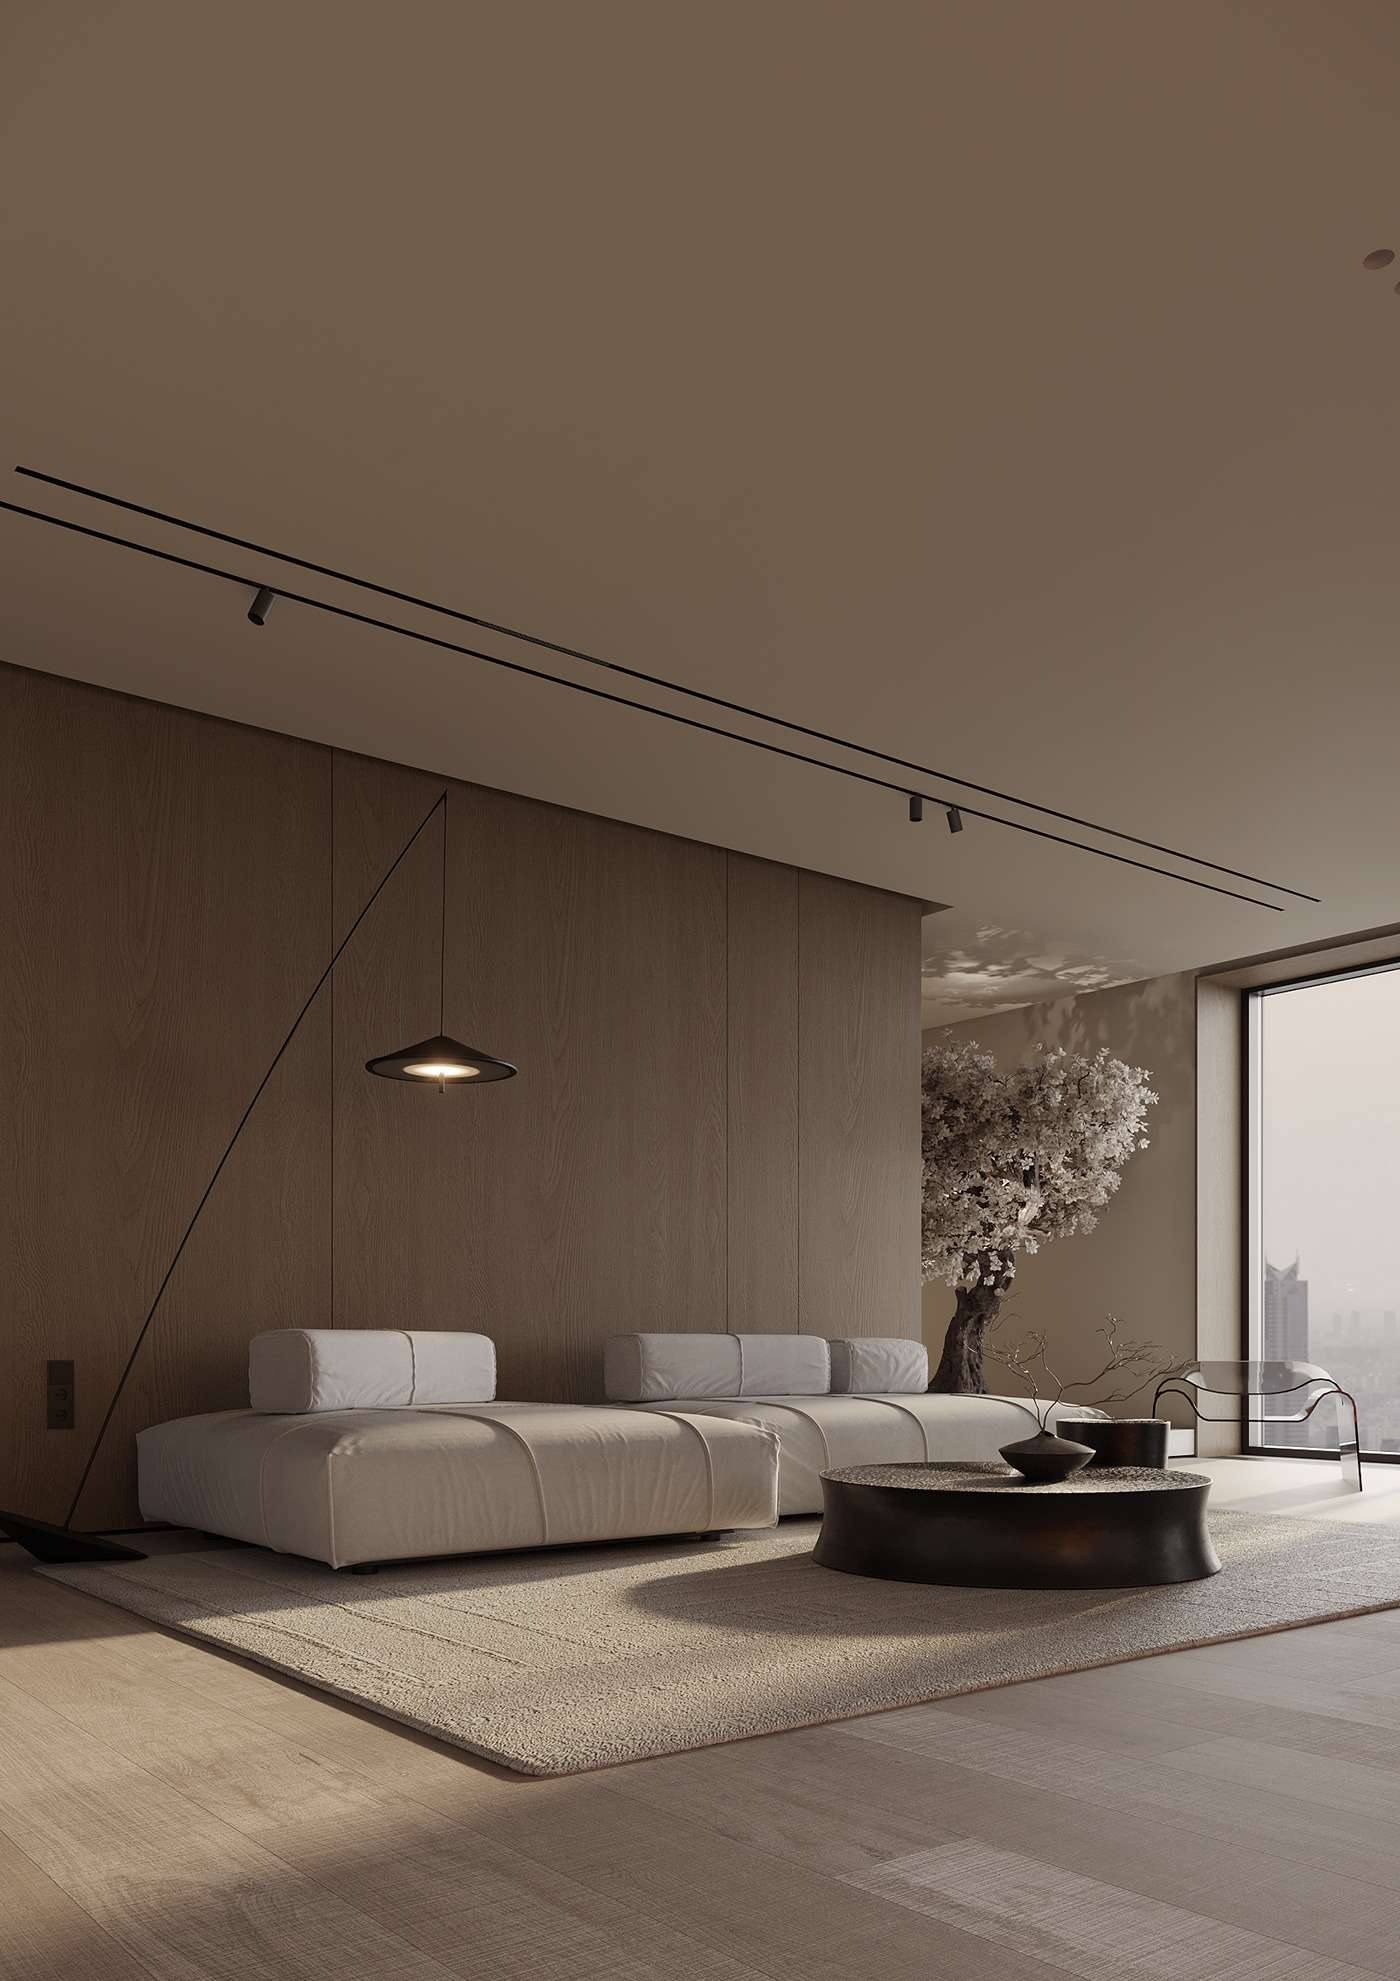 Thiết kế phòng khách chung cư phong cách tối giản, đề cao tiện ích sử dụng